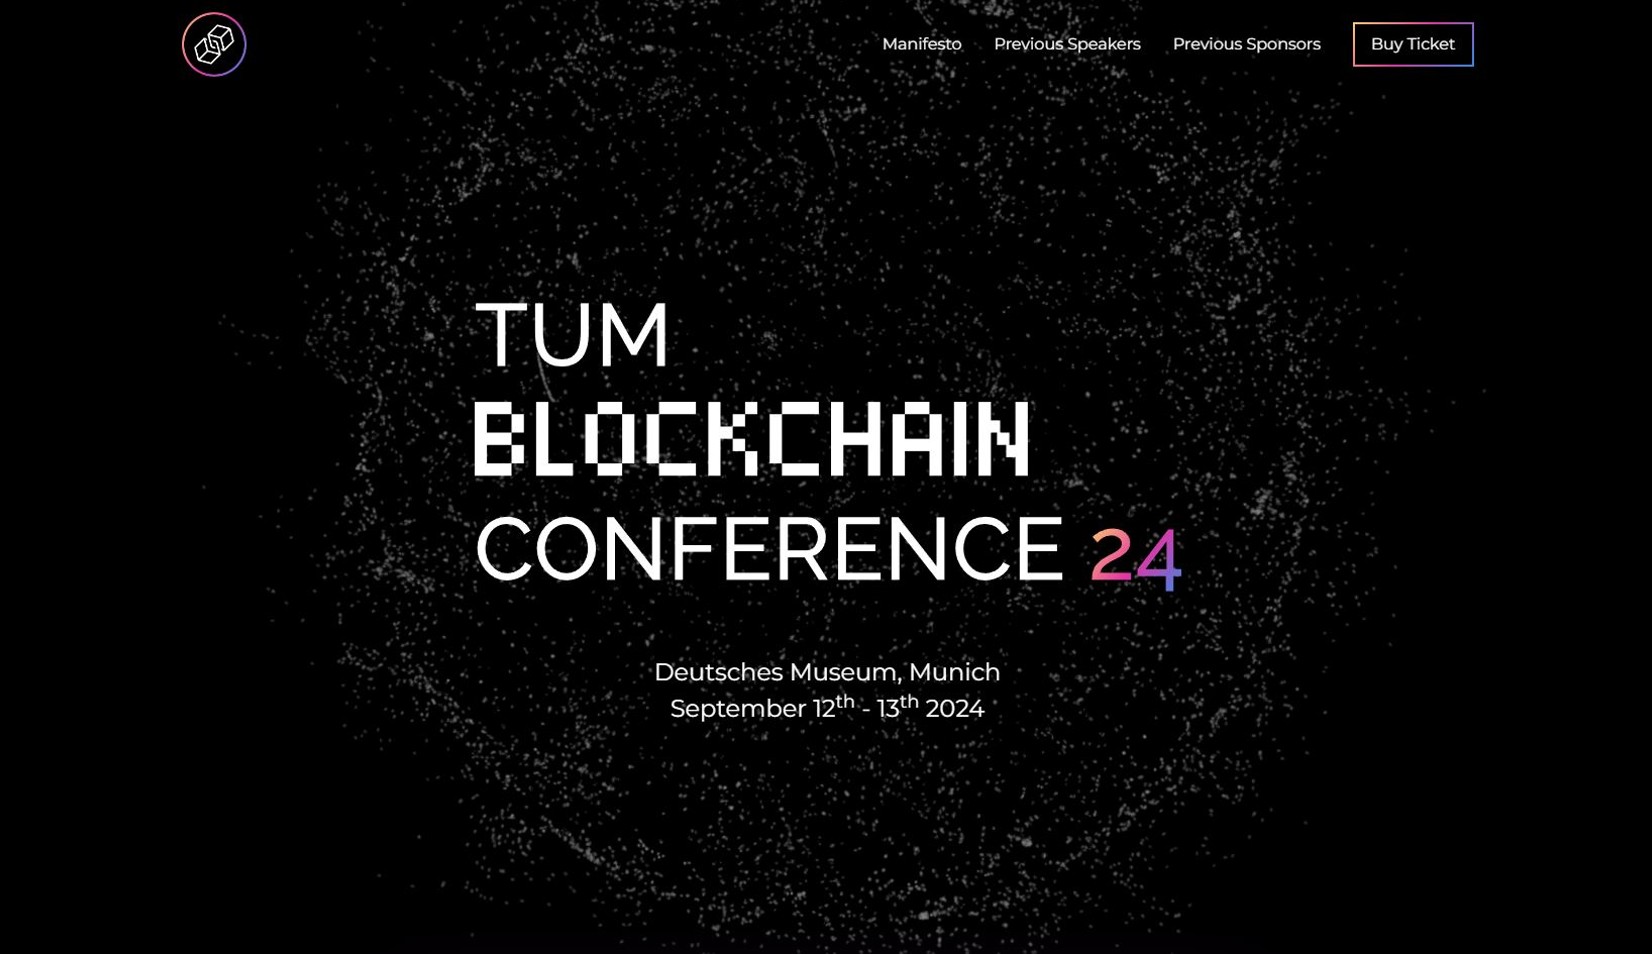 Tum blockchain conference